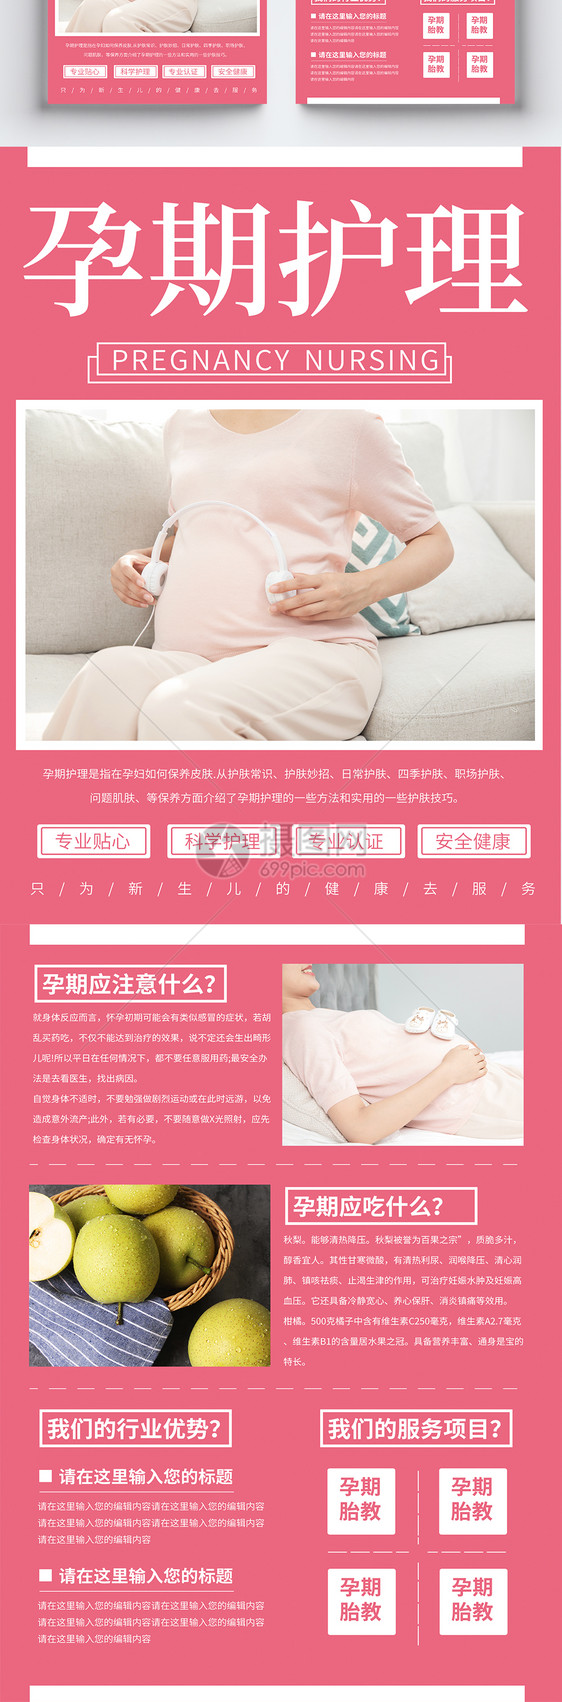 简约大气孕期护理宣传单页图片